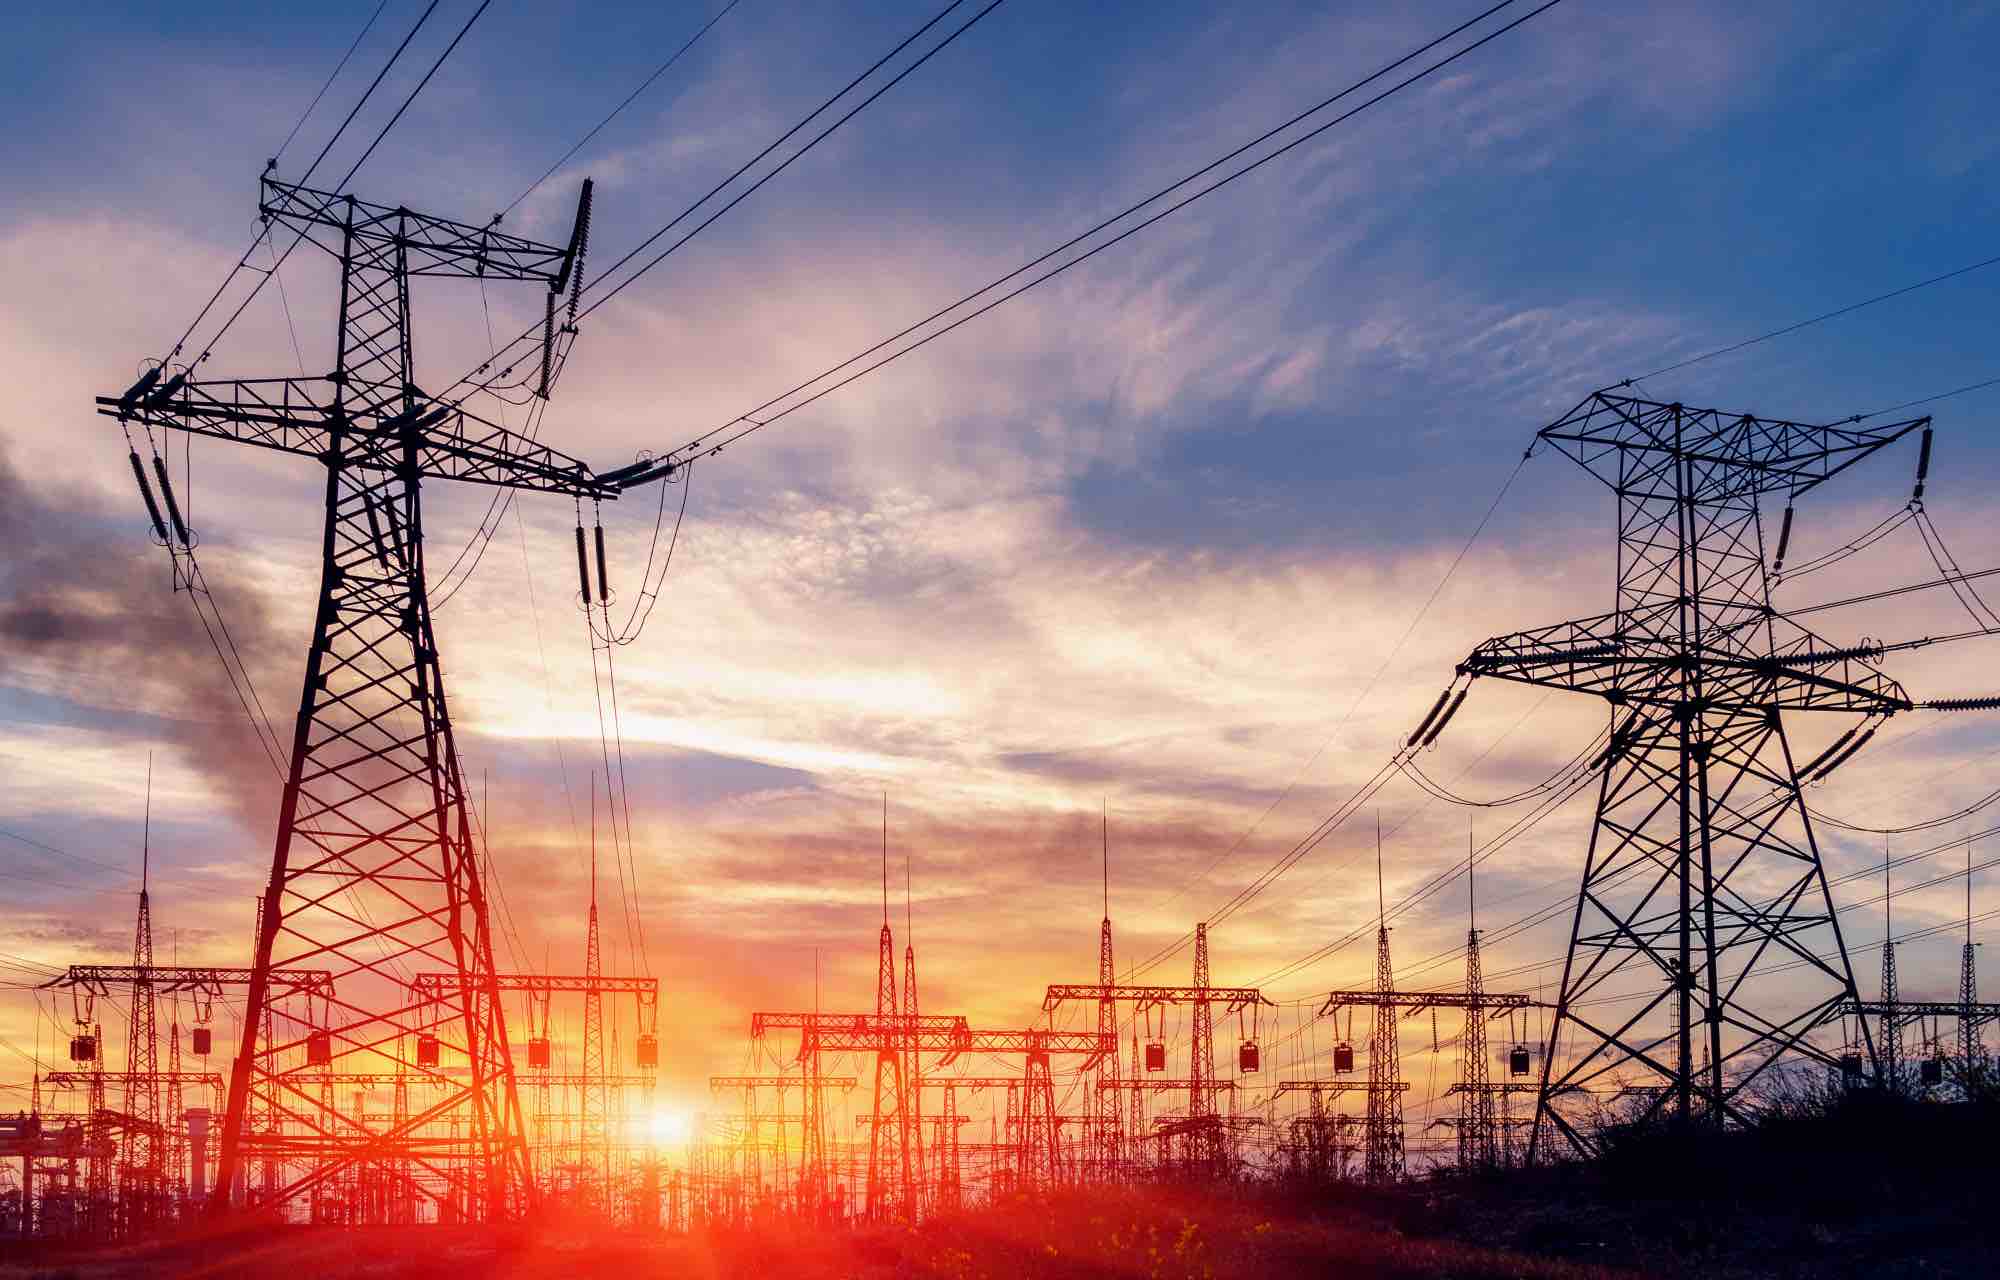 مجلس الوزراء السعودي يعتمد توقيع اتفاقية السوق العربية المشتركة للكهرباء